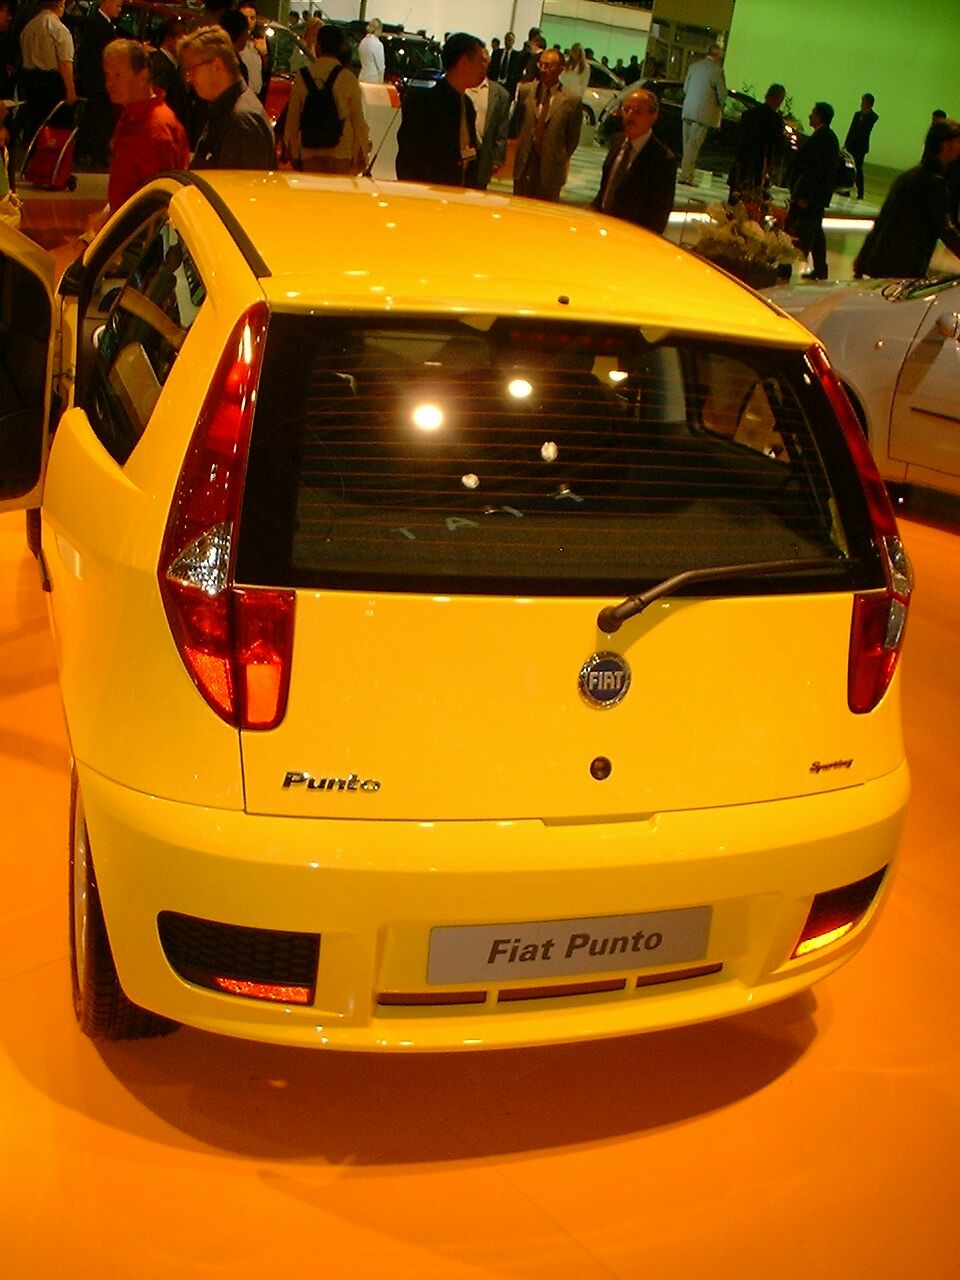 Fiat Punto Sporting at the 2003 Frankfurt IAA